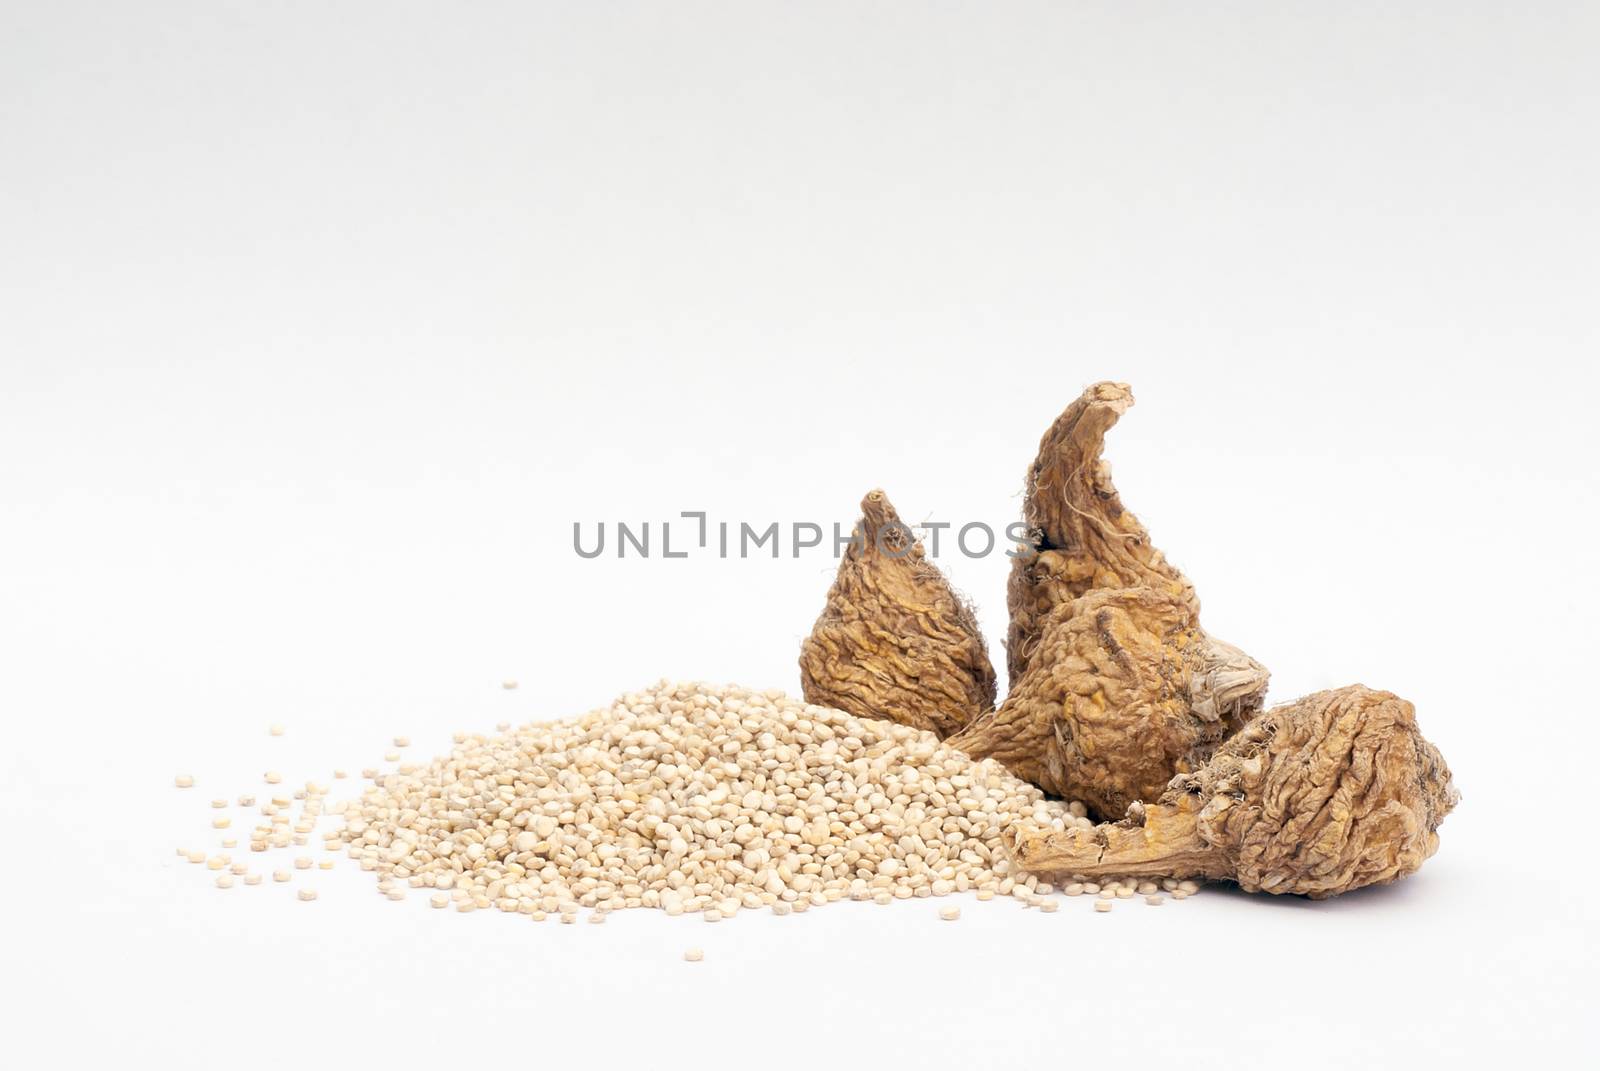 Peruvian ginseng or maca (Lepidium meyenii) and quinoa (Chenopodium quinoa ), superfood